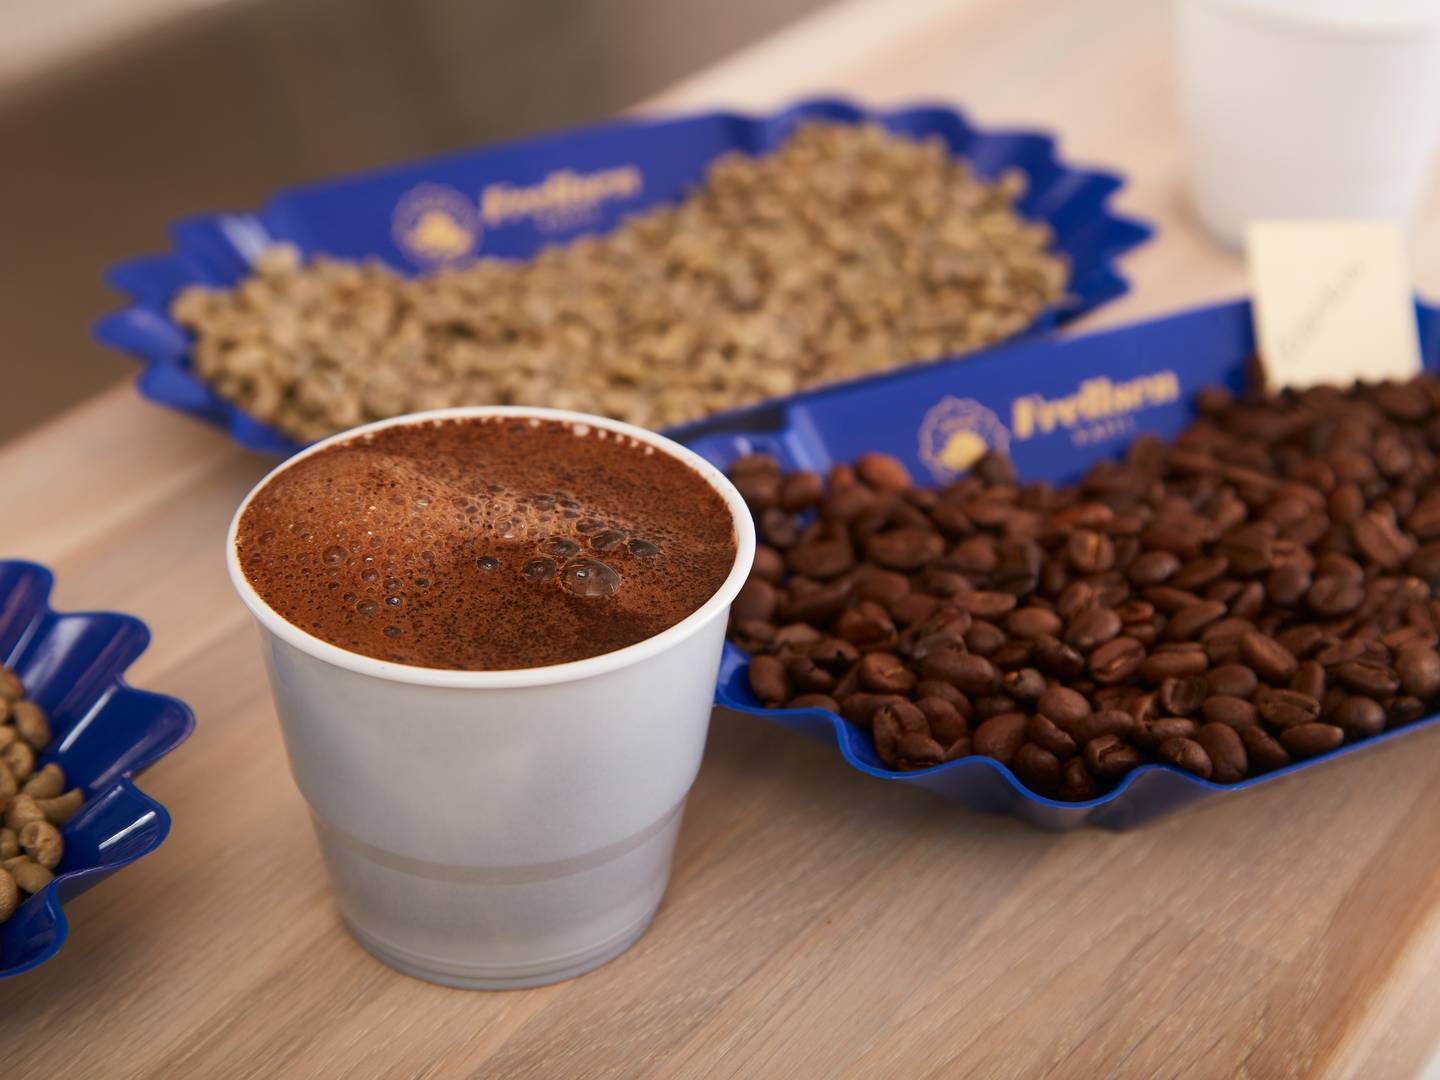 "Da råkaffepriserne i det forgangne år har været stagnerende, har det haft en positiv påvirkning på indtjeningen,” skriver ledelsen i beretningen. | Foto: Pr / Frellsen